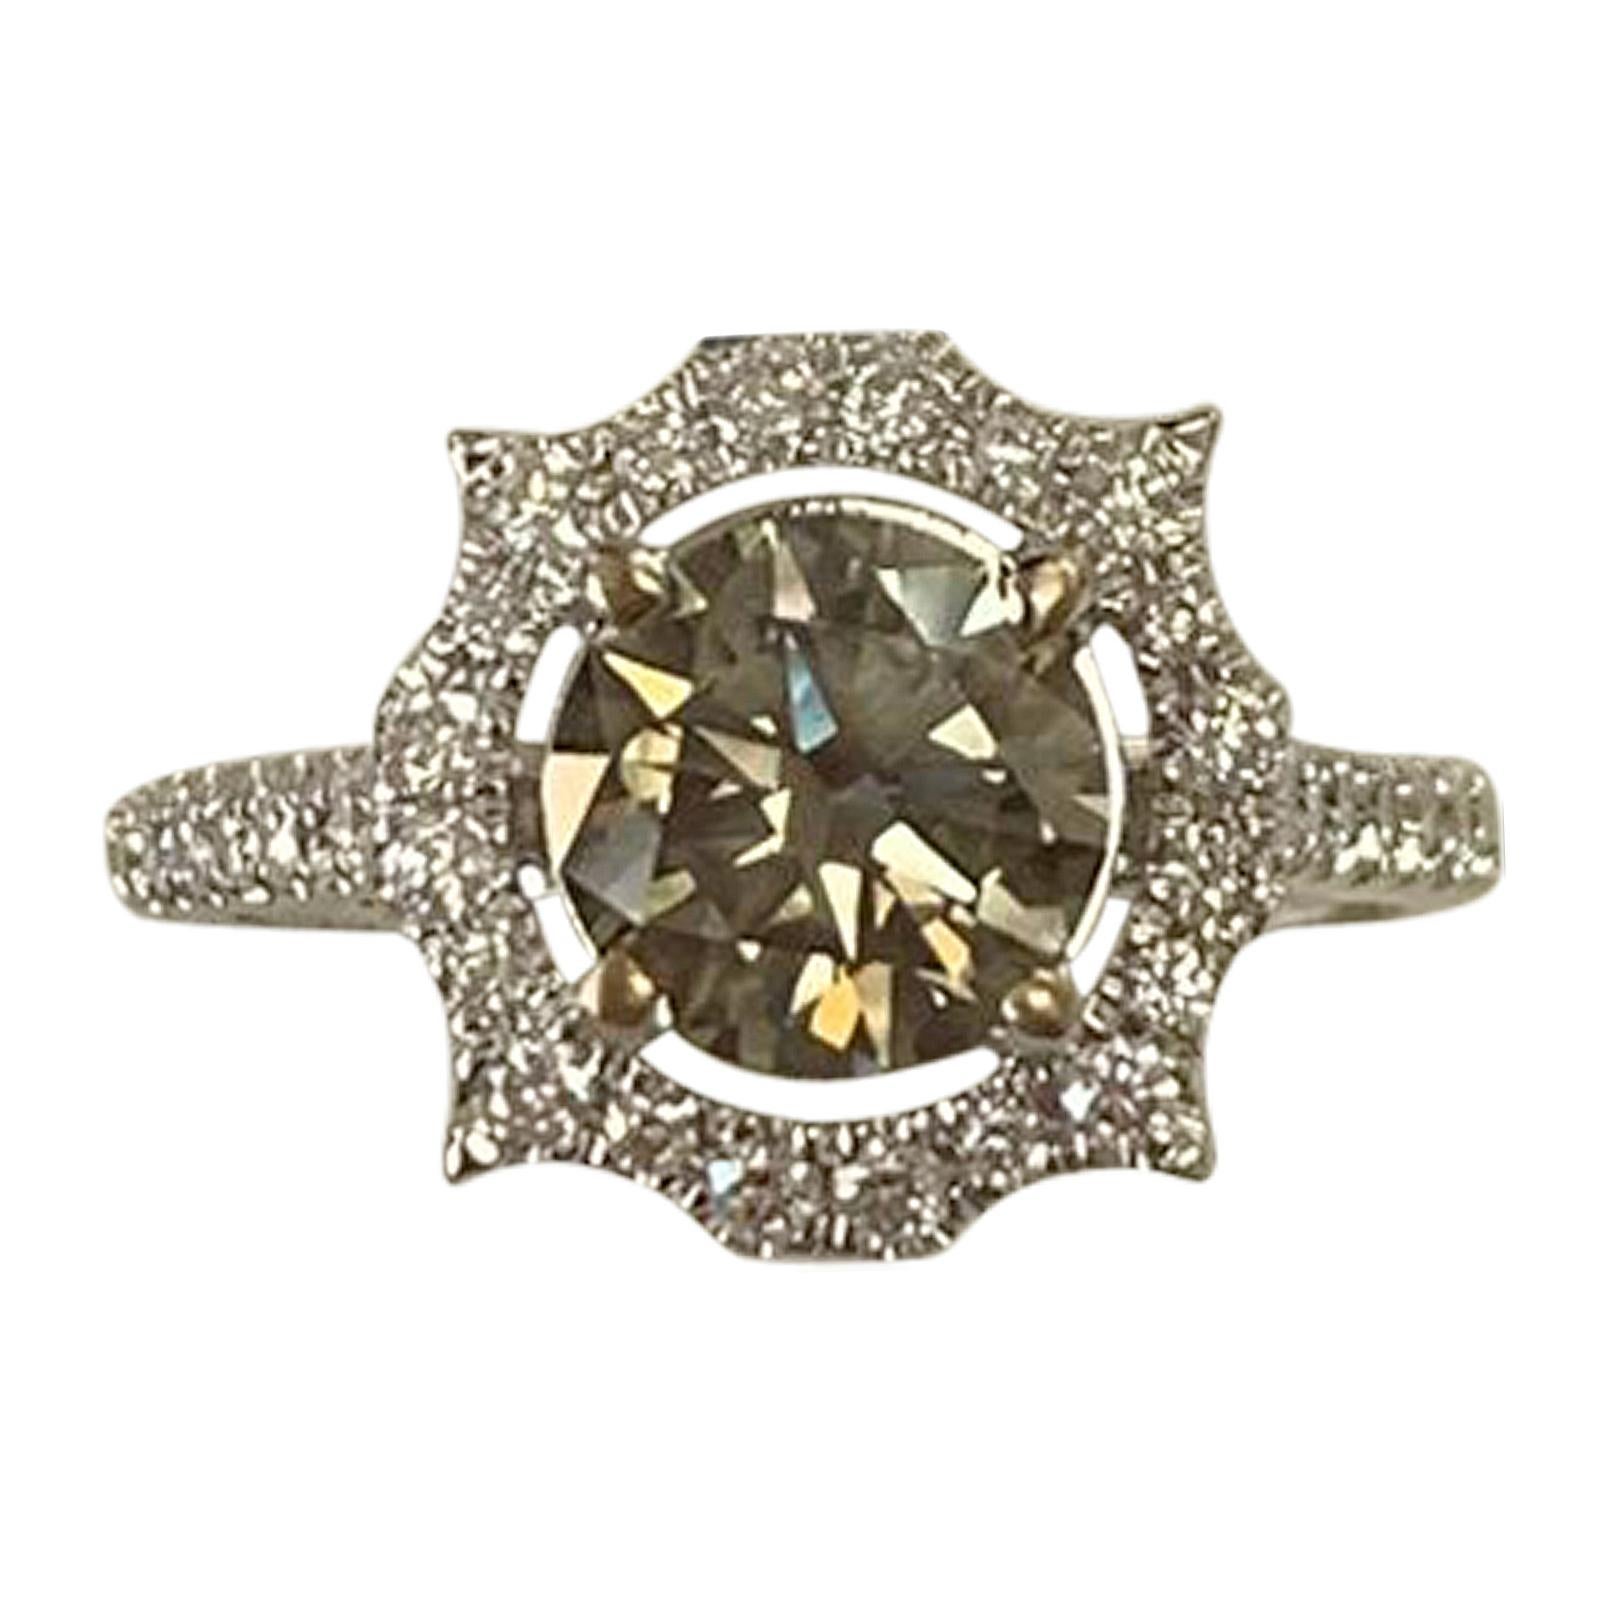 GIA Certified 1.24 Carat Fancy Dark Gray Round Diamond Ring 18 Karat White Gold